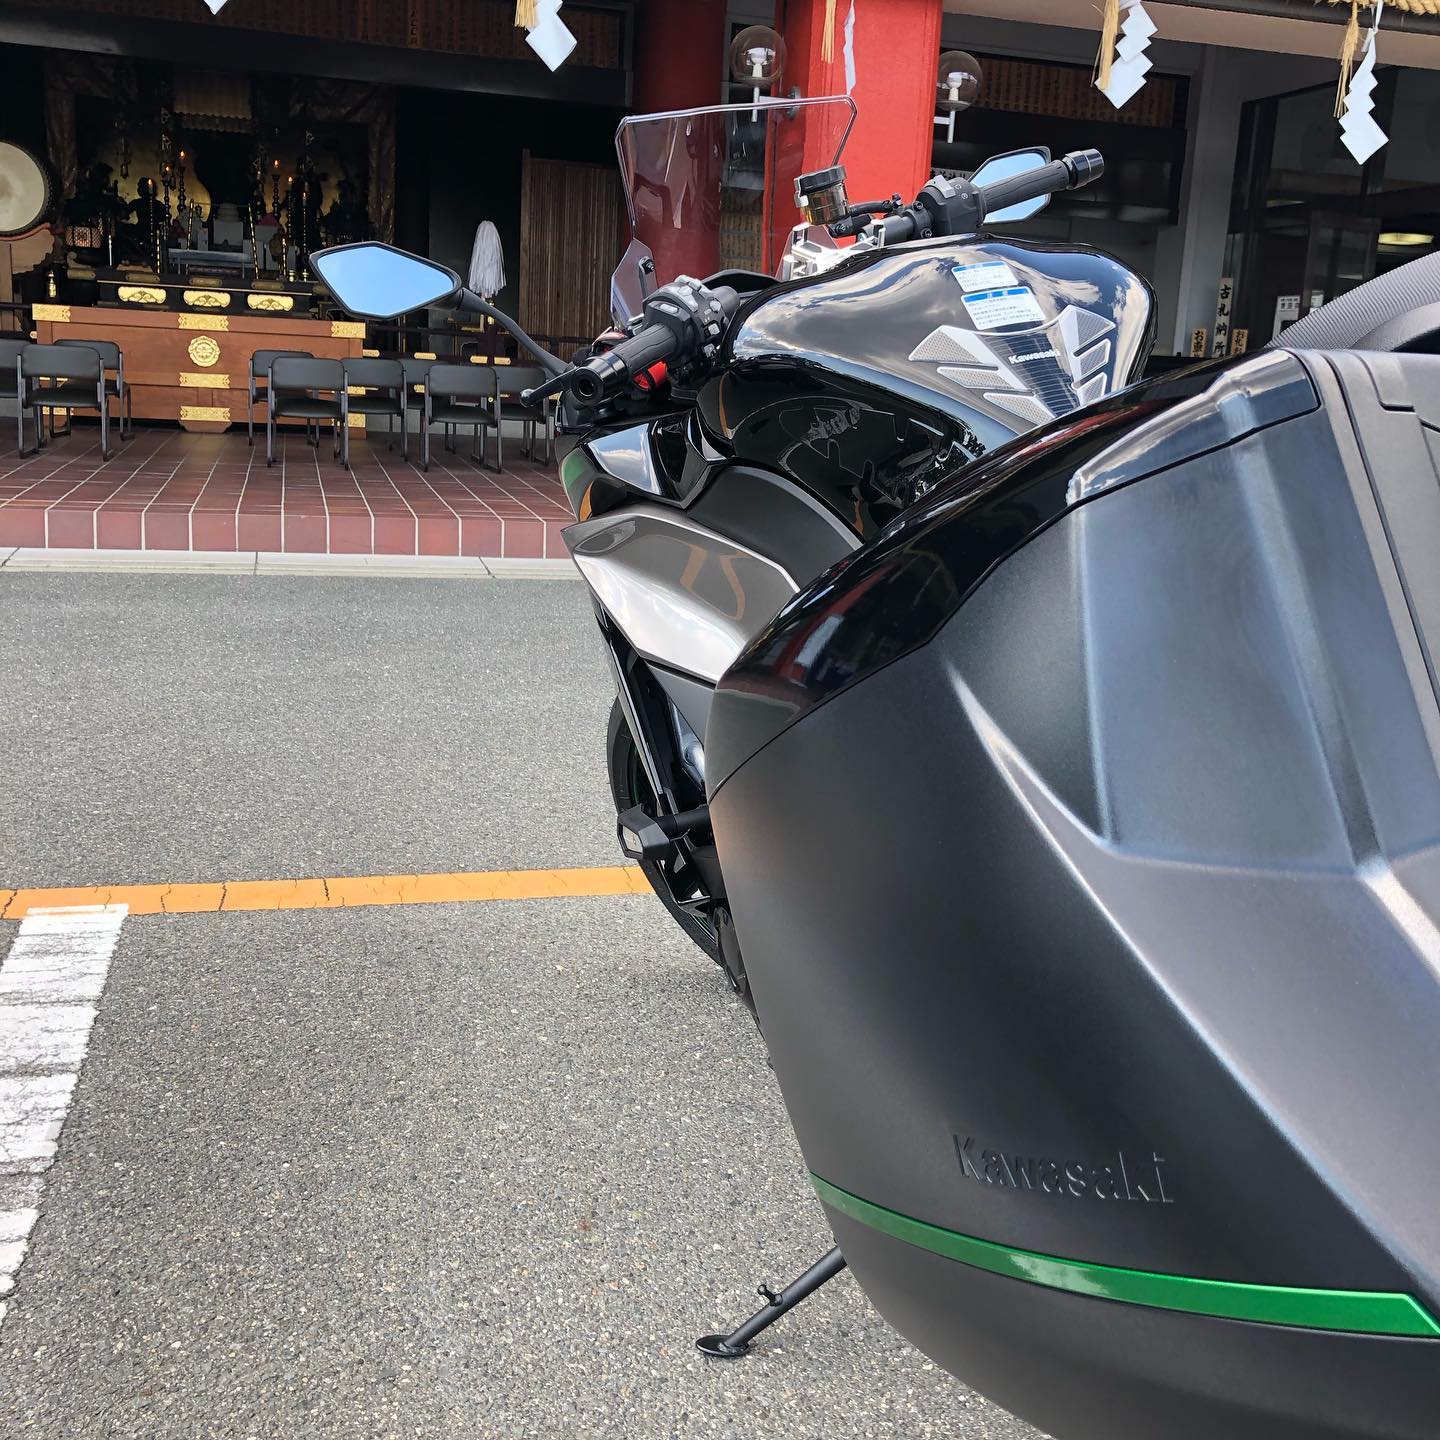 Twitterで教えてもらったのでninja1000sxの安全祈祷に成田山までやってきました#ninja1000sx #交通安全 #安全祈祷 #バイクのある生活